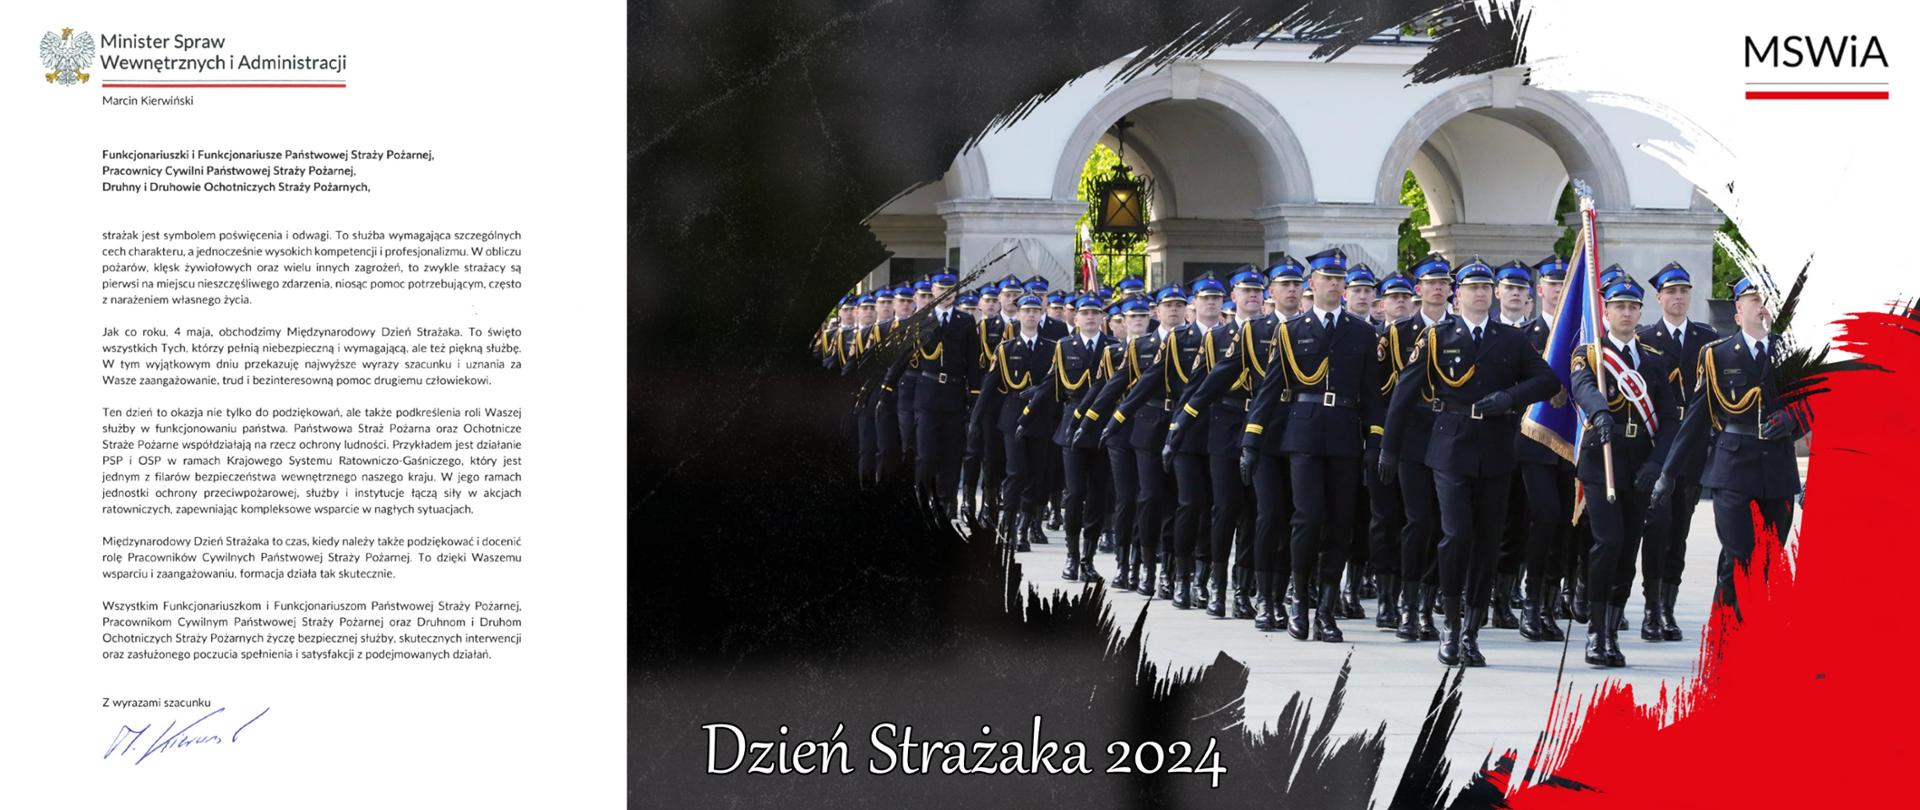 Dzień Strażaka 2024 - życzenia Ministra Spraw Wewnętrznych i Administracji M. Kierwińskiego z okazji Dnia Strażaka